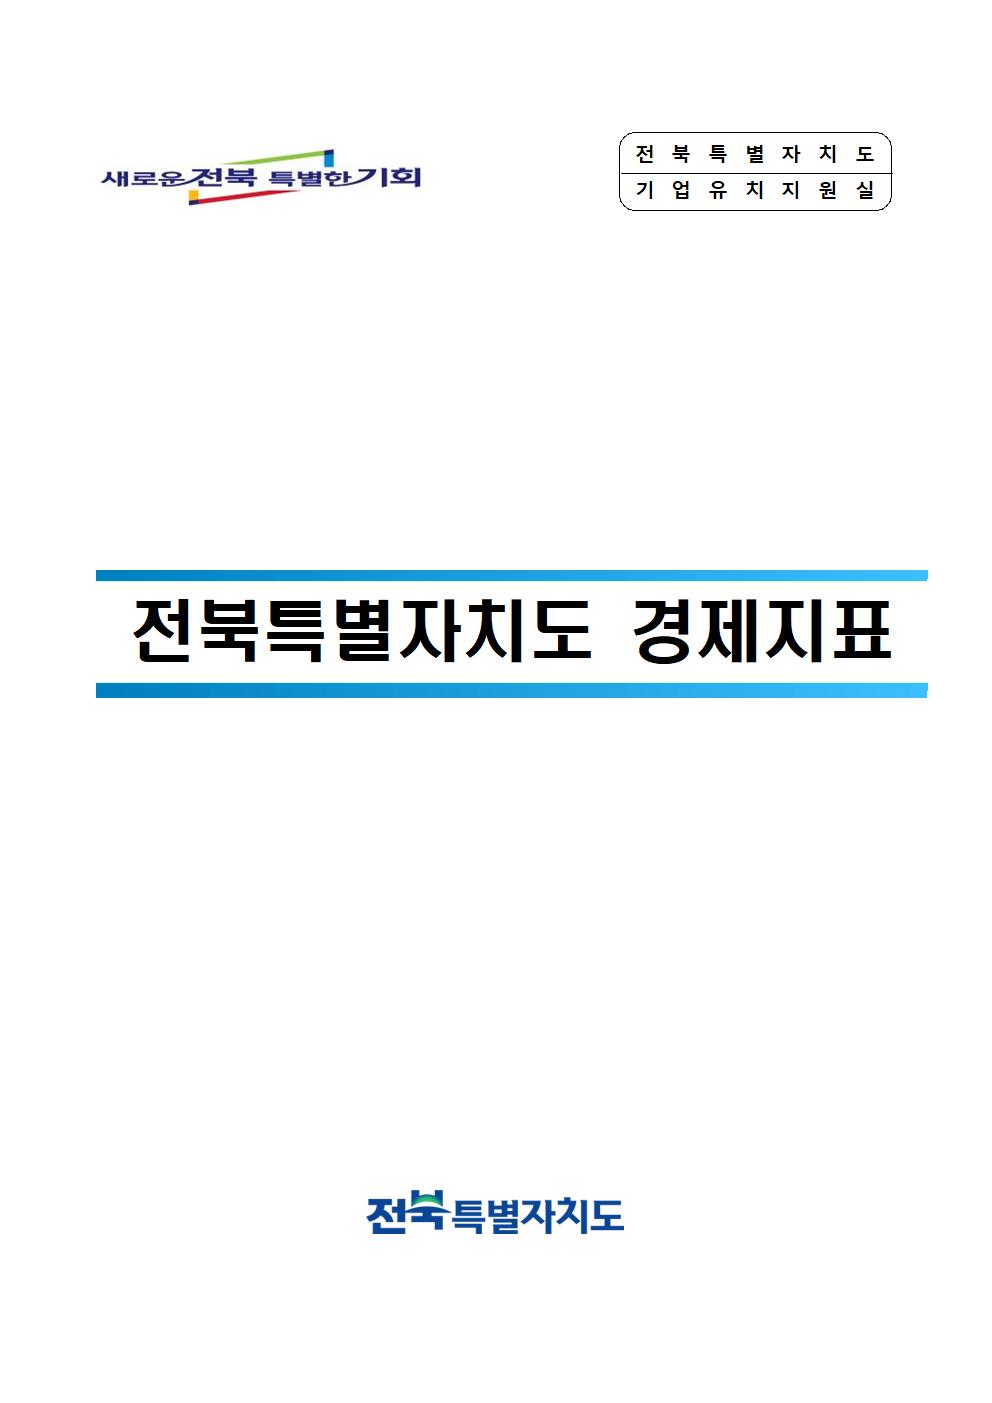 전북특별자치도 공공요금 (24. 2월) 1번째 이미지